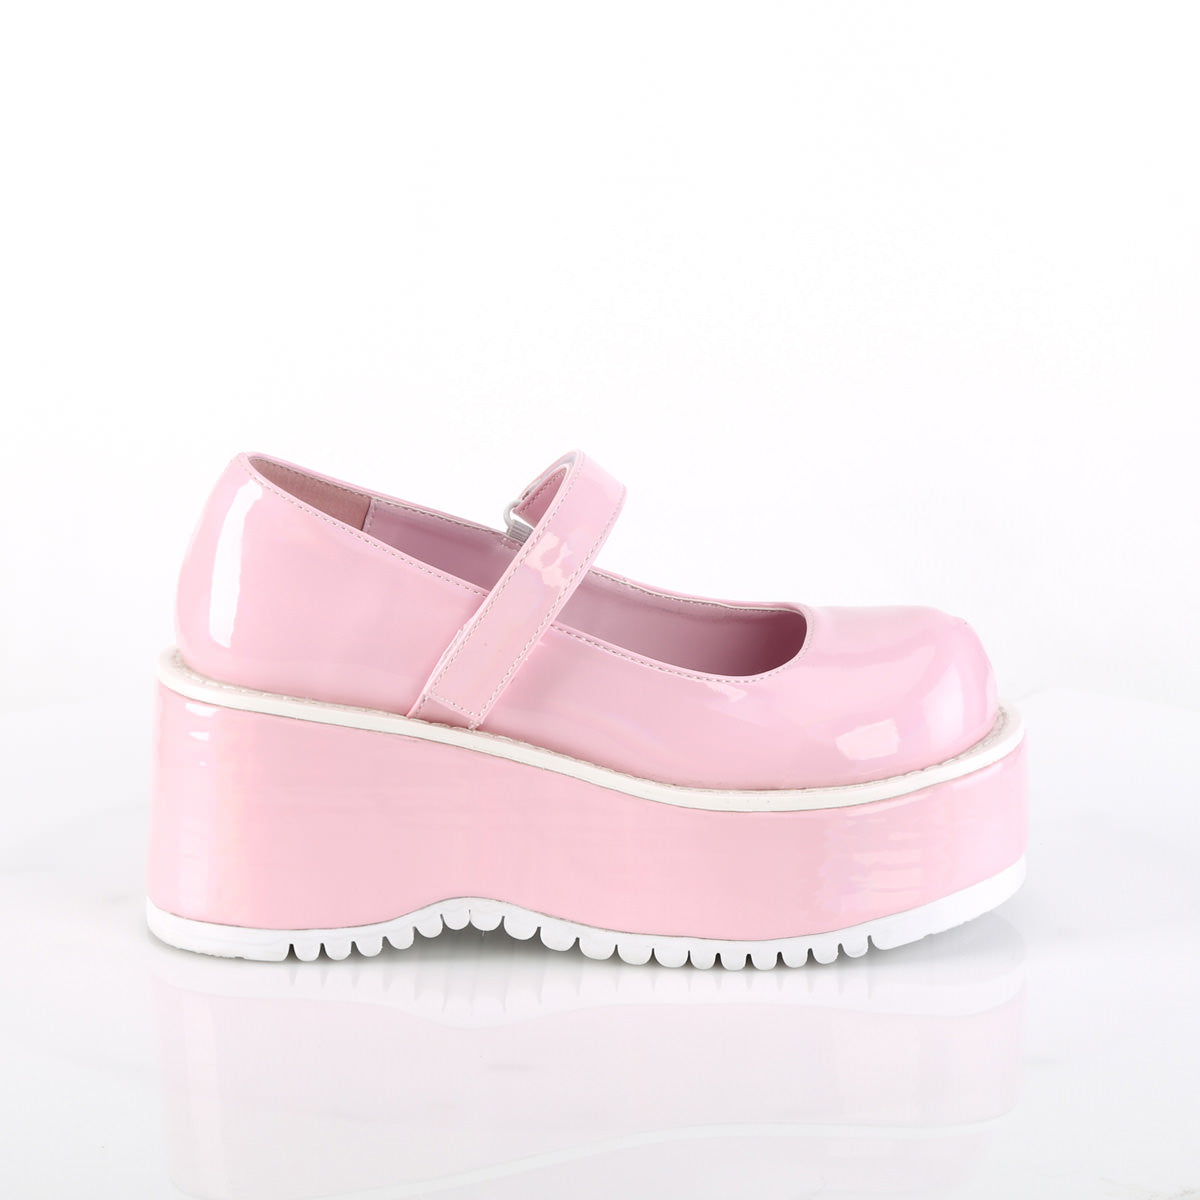 3 Inch Platform DOLLIE-01 Baby Pink